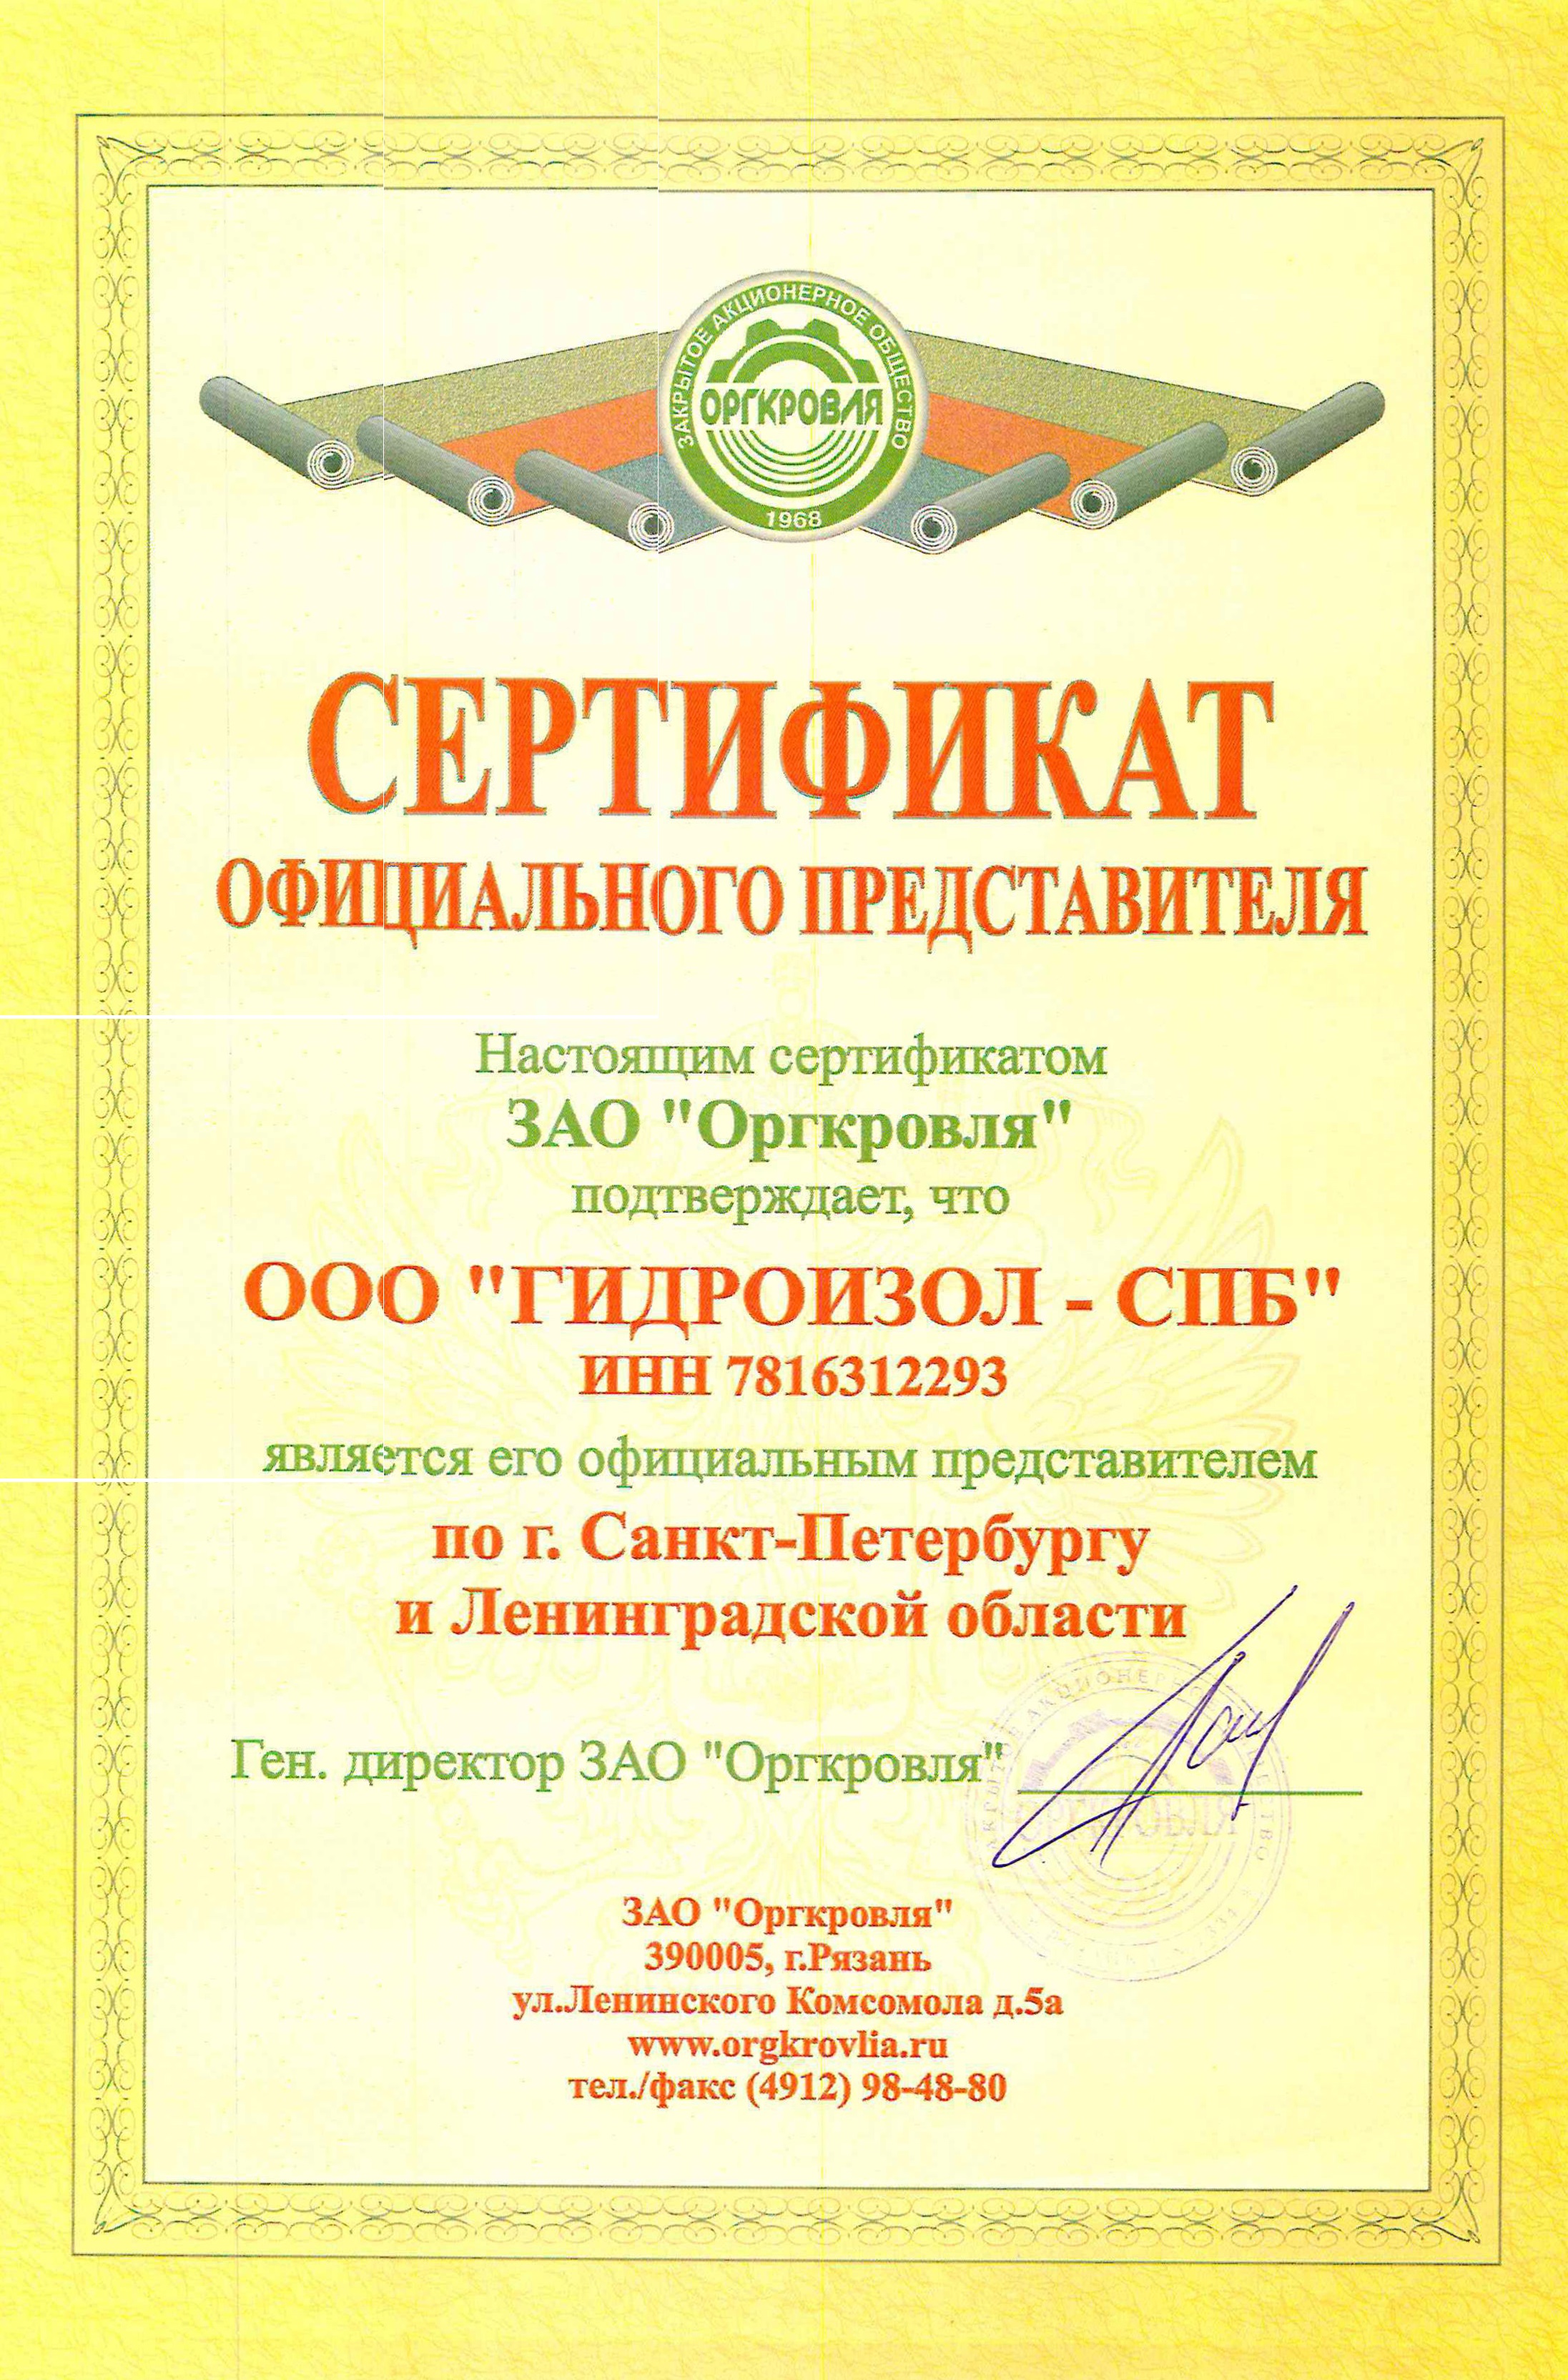 Сертификат ООО ГИДРОИЗОЛ-СПБ официального представителя ЗАО Оргкровля